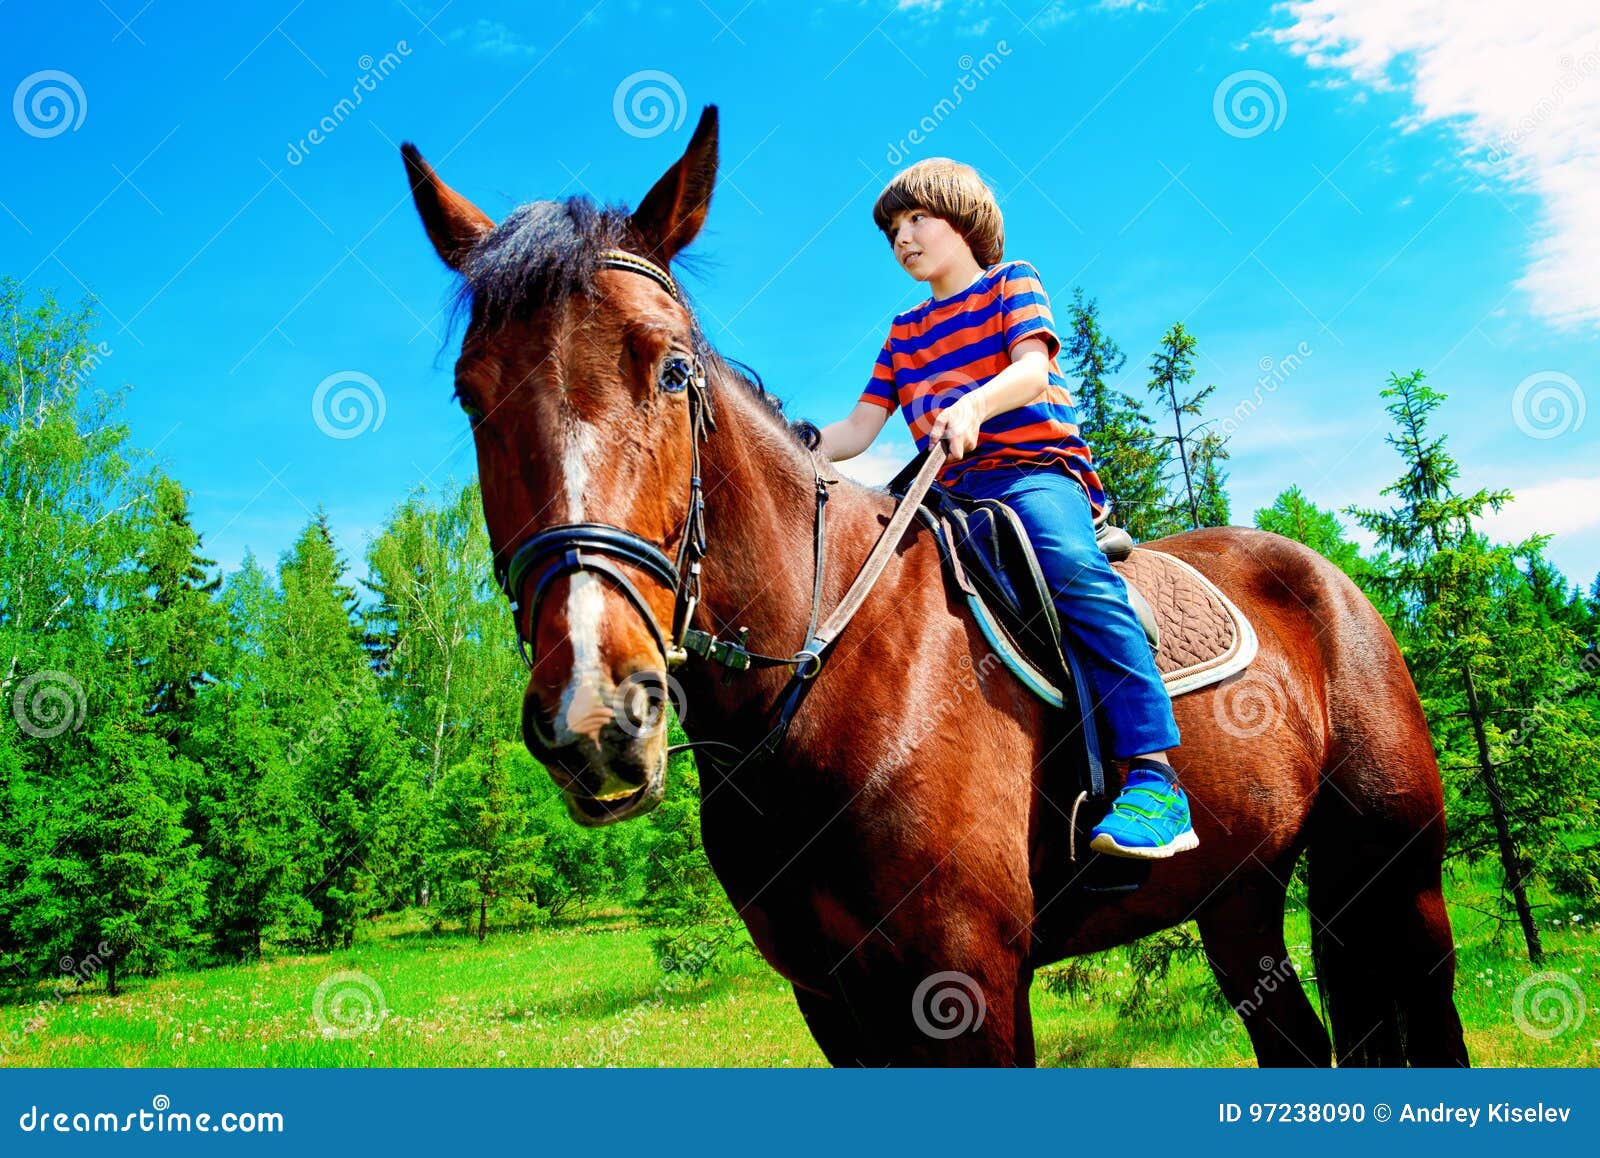 Foto Uma criança pequena montando um cavalo na frente de um celeiro –  Imagem de México grátis no Unsplash